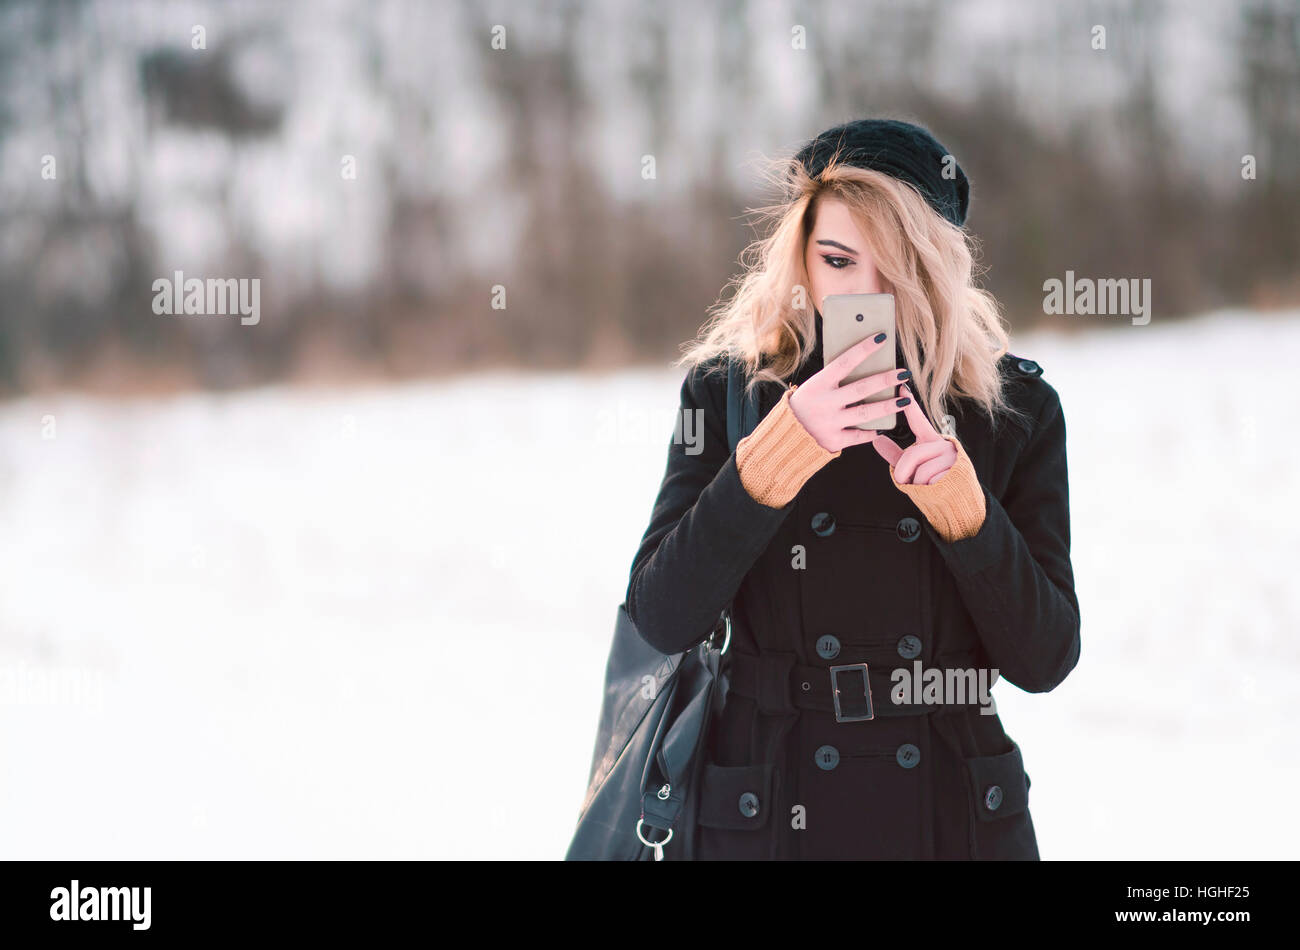 Jeune fille blonde d'autres dans des vêtements noirs looking at phone Banque D'Images